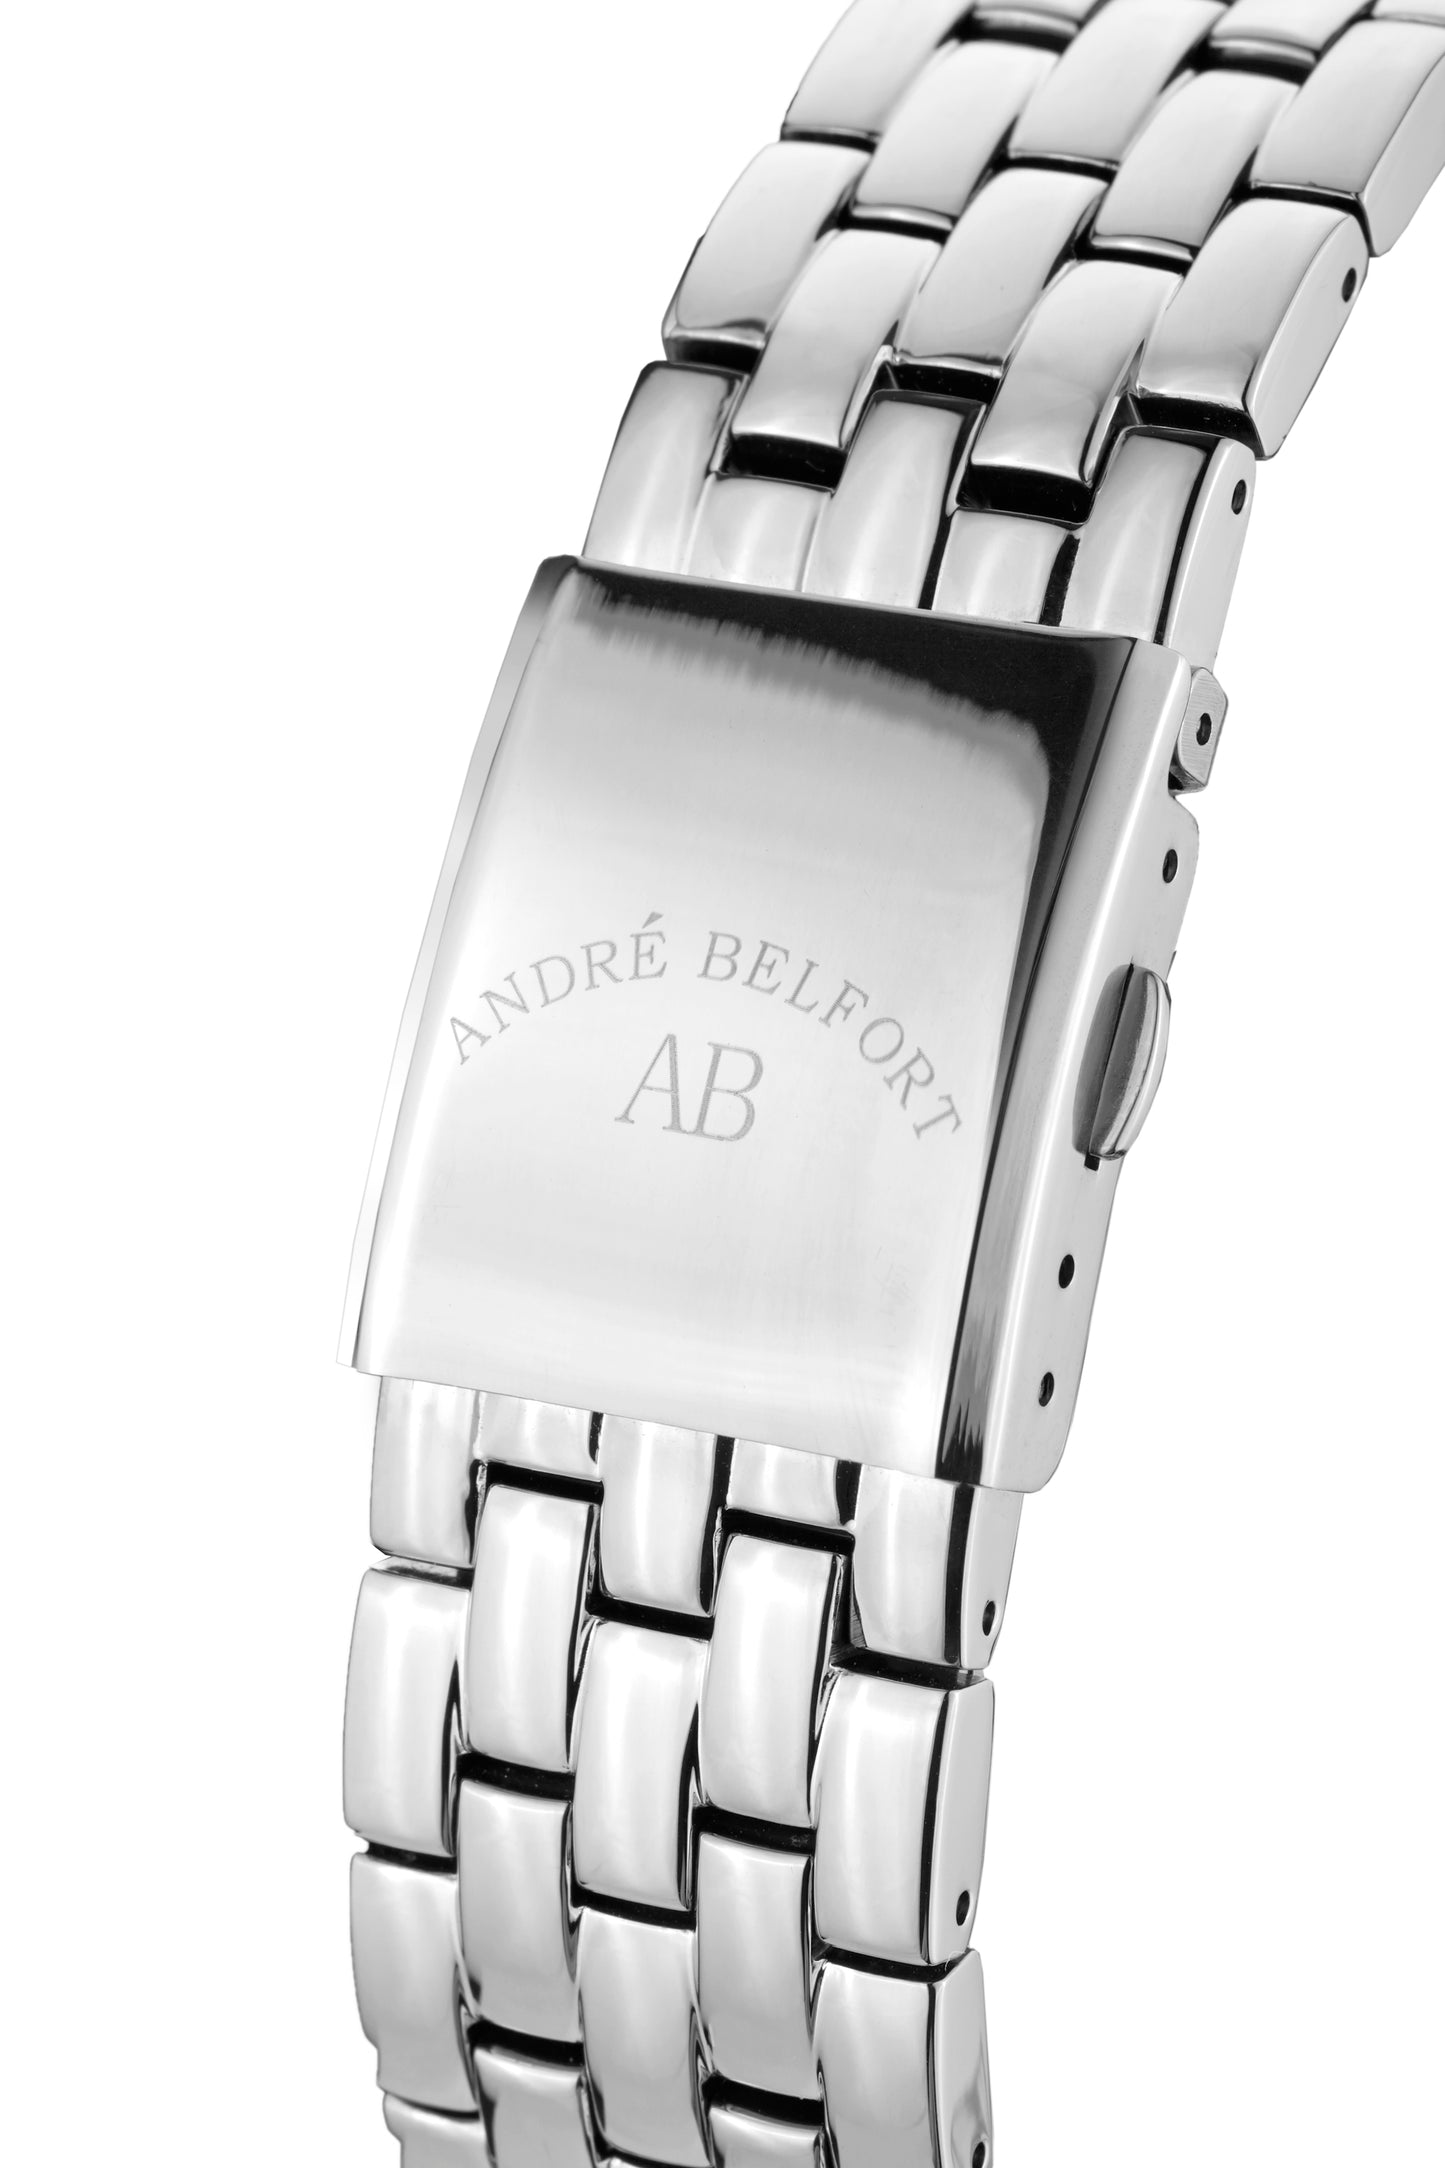 Automatic watches — Étoile Polaire — André Belfort — schwarz